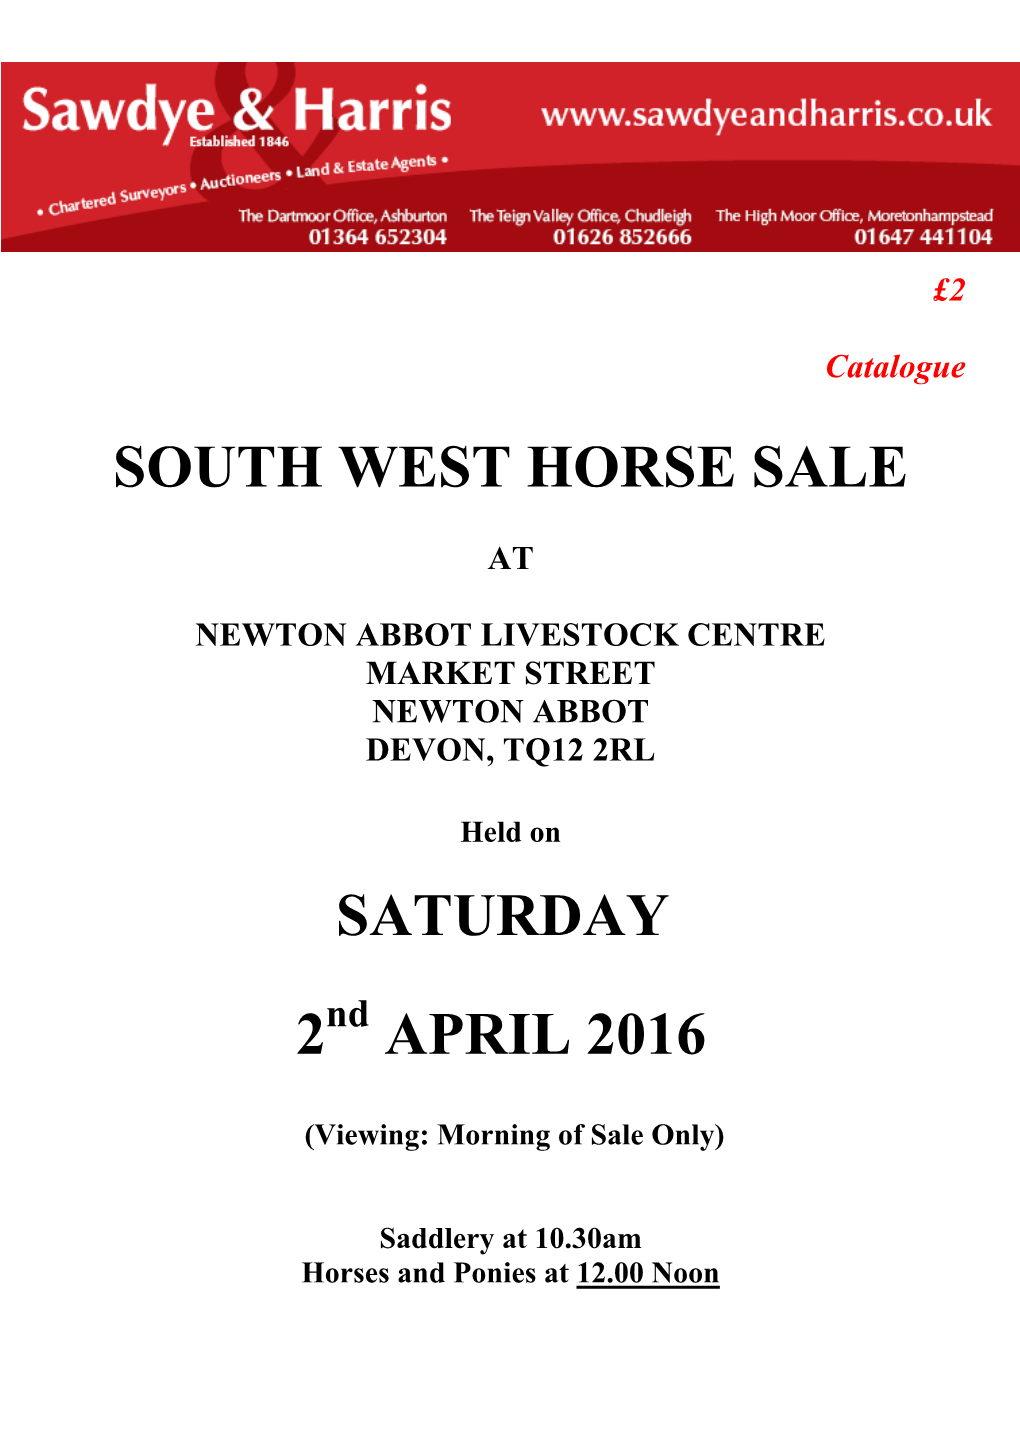 South West Horse Sale Saturday 2 April 2016